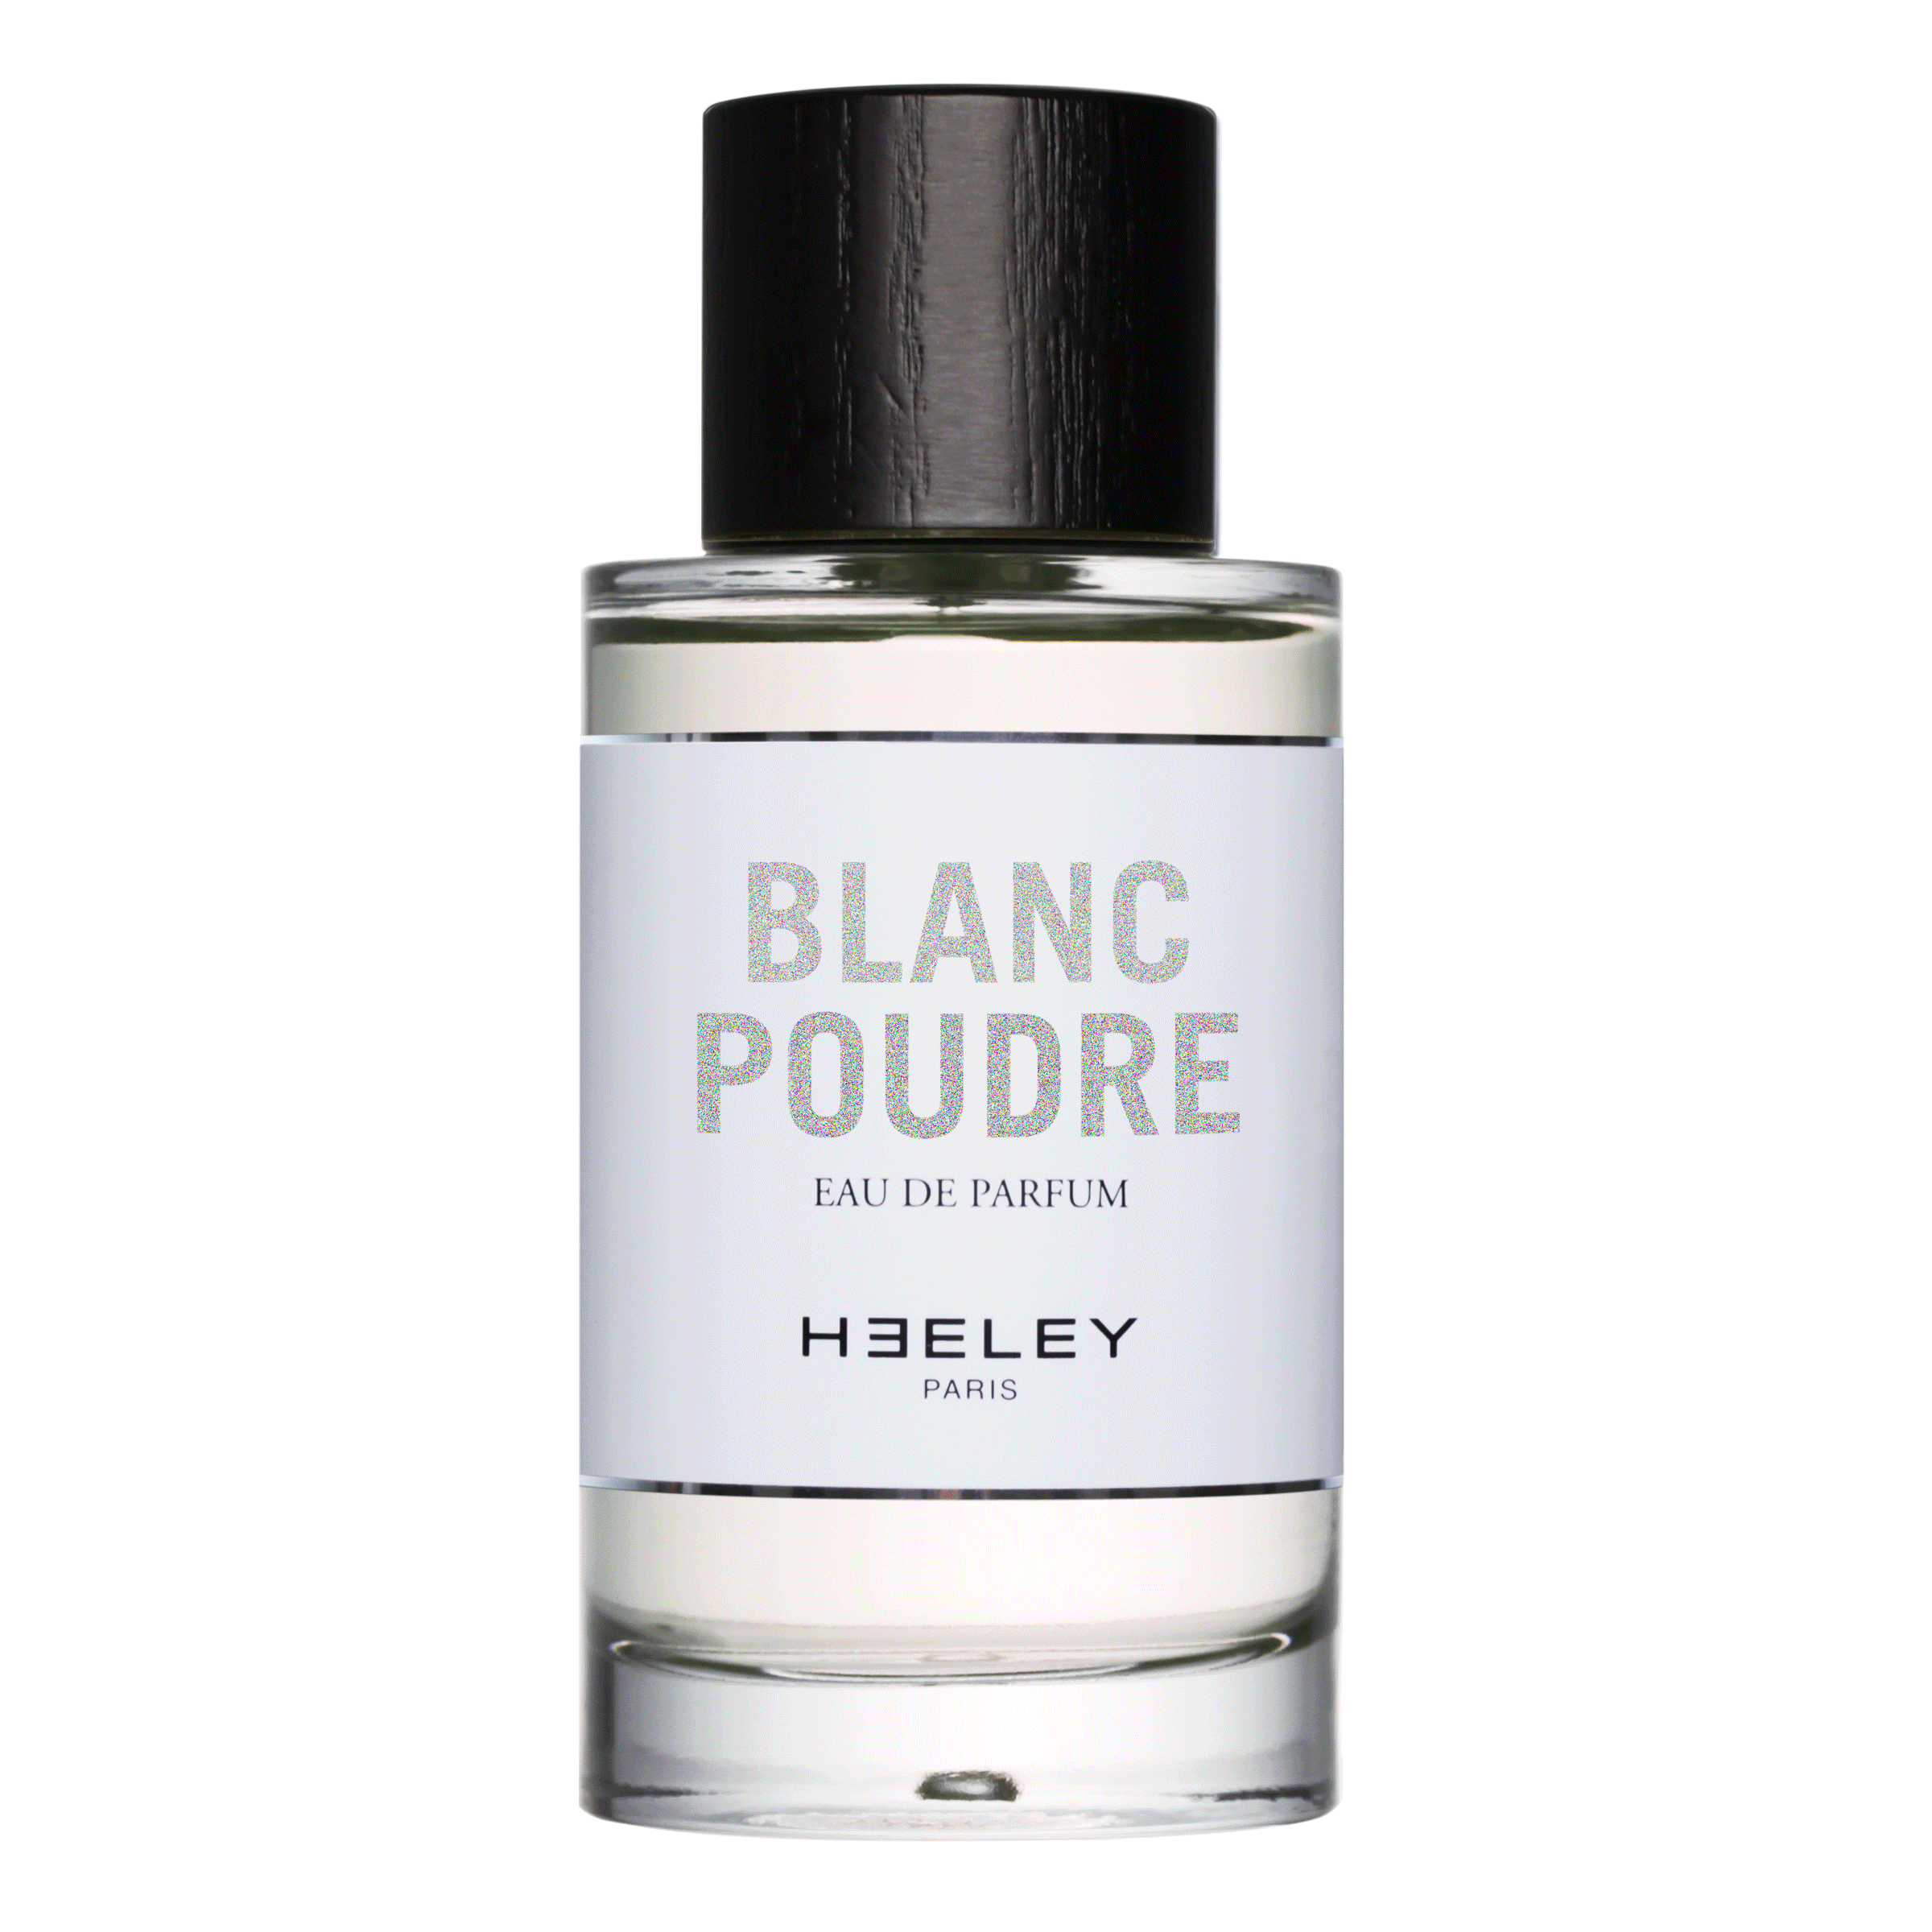 Heeley - Blanc Poudre - Eau de Parfum